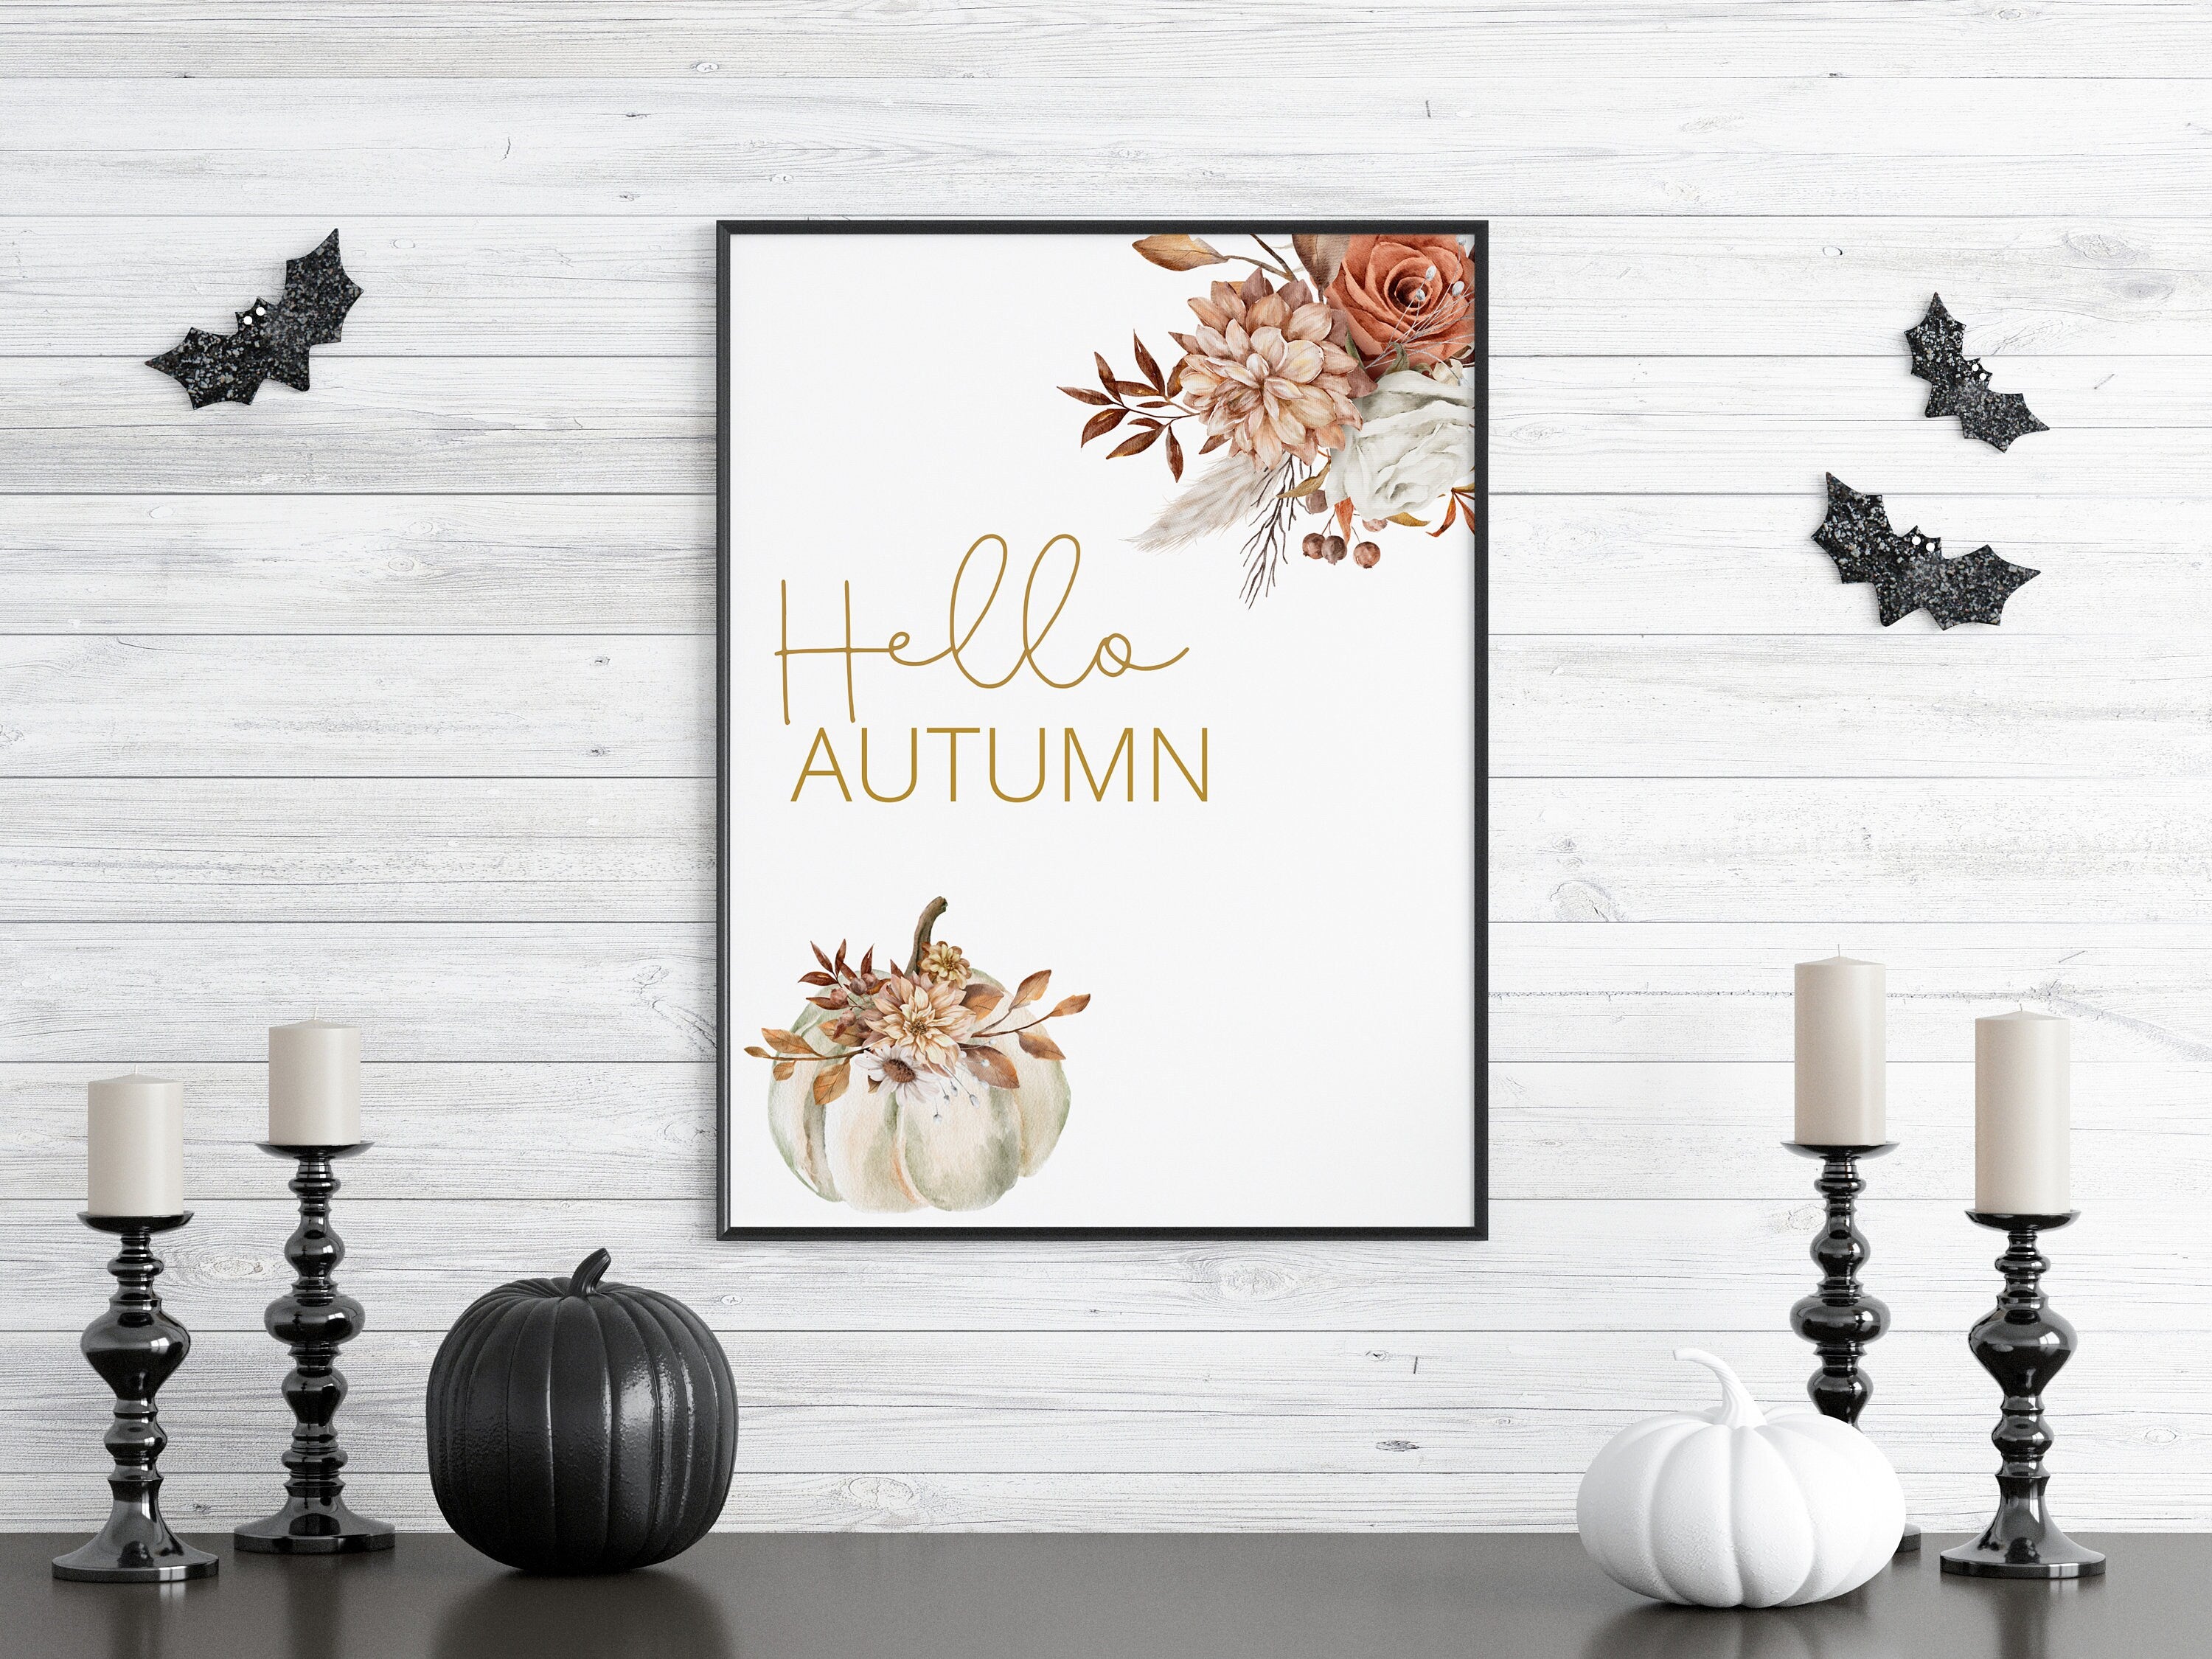 Autumn home decor, autumn wall decorations, Wall art halloween, Fall decor wall art, Pumpkin autumn poster, Pumpkin prints, autumnal prints